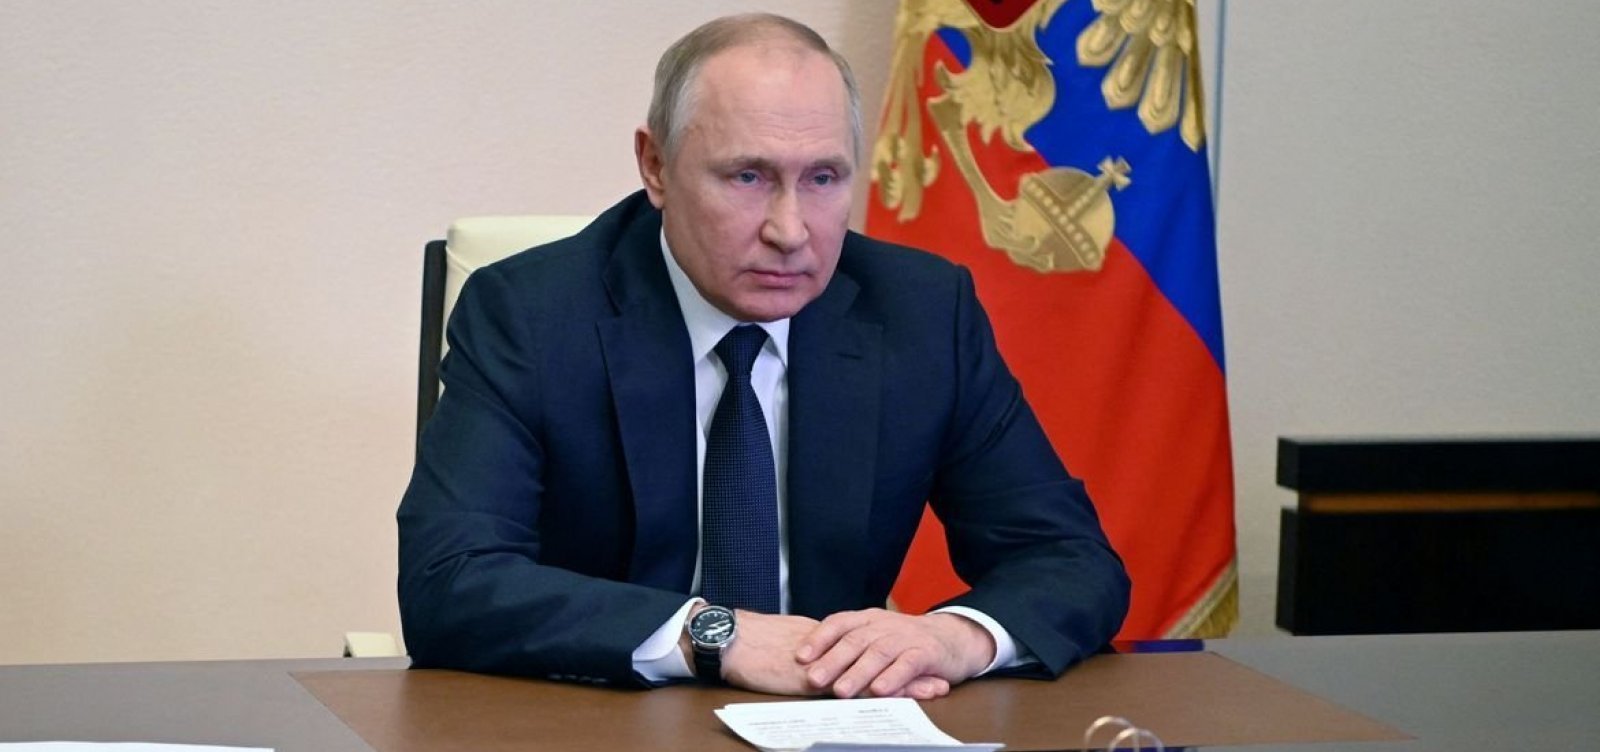 Putin vence eleição na Rússia e se manterá no poder até 2030